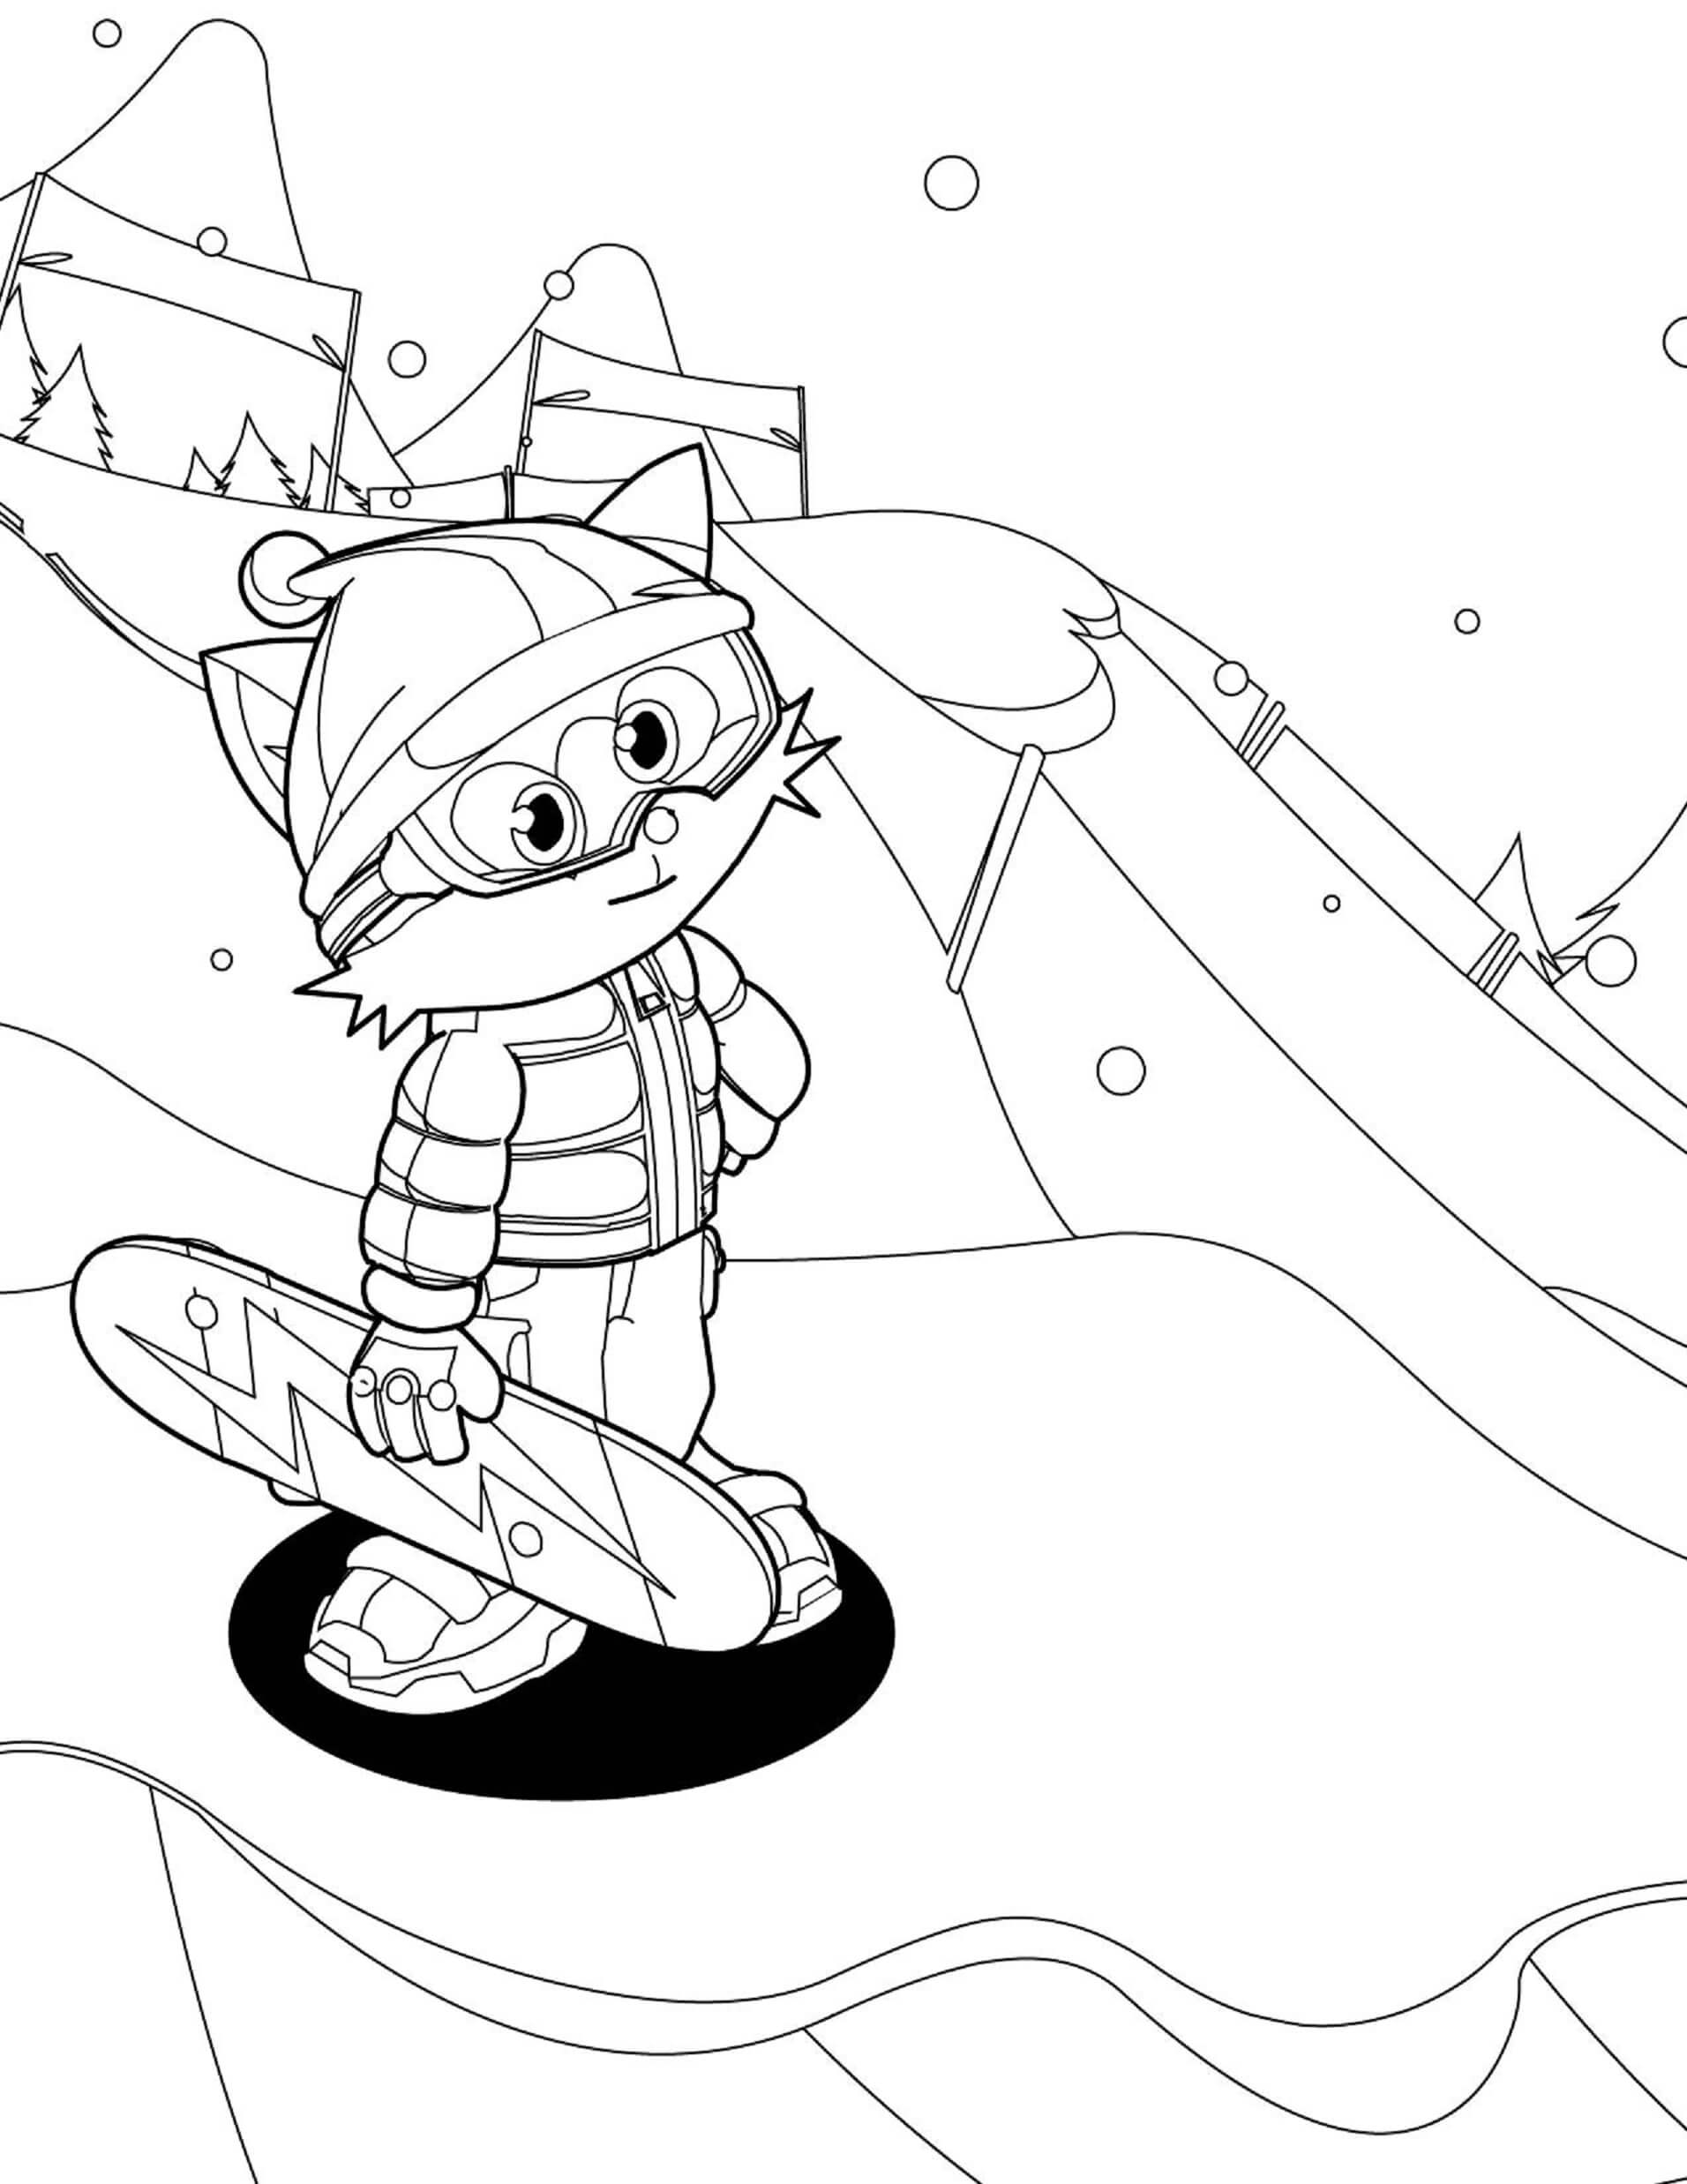 Snowboard De Desenhos Animados para colorir